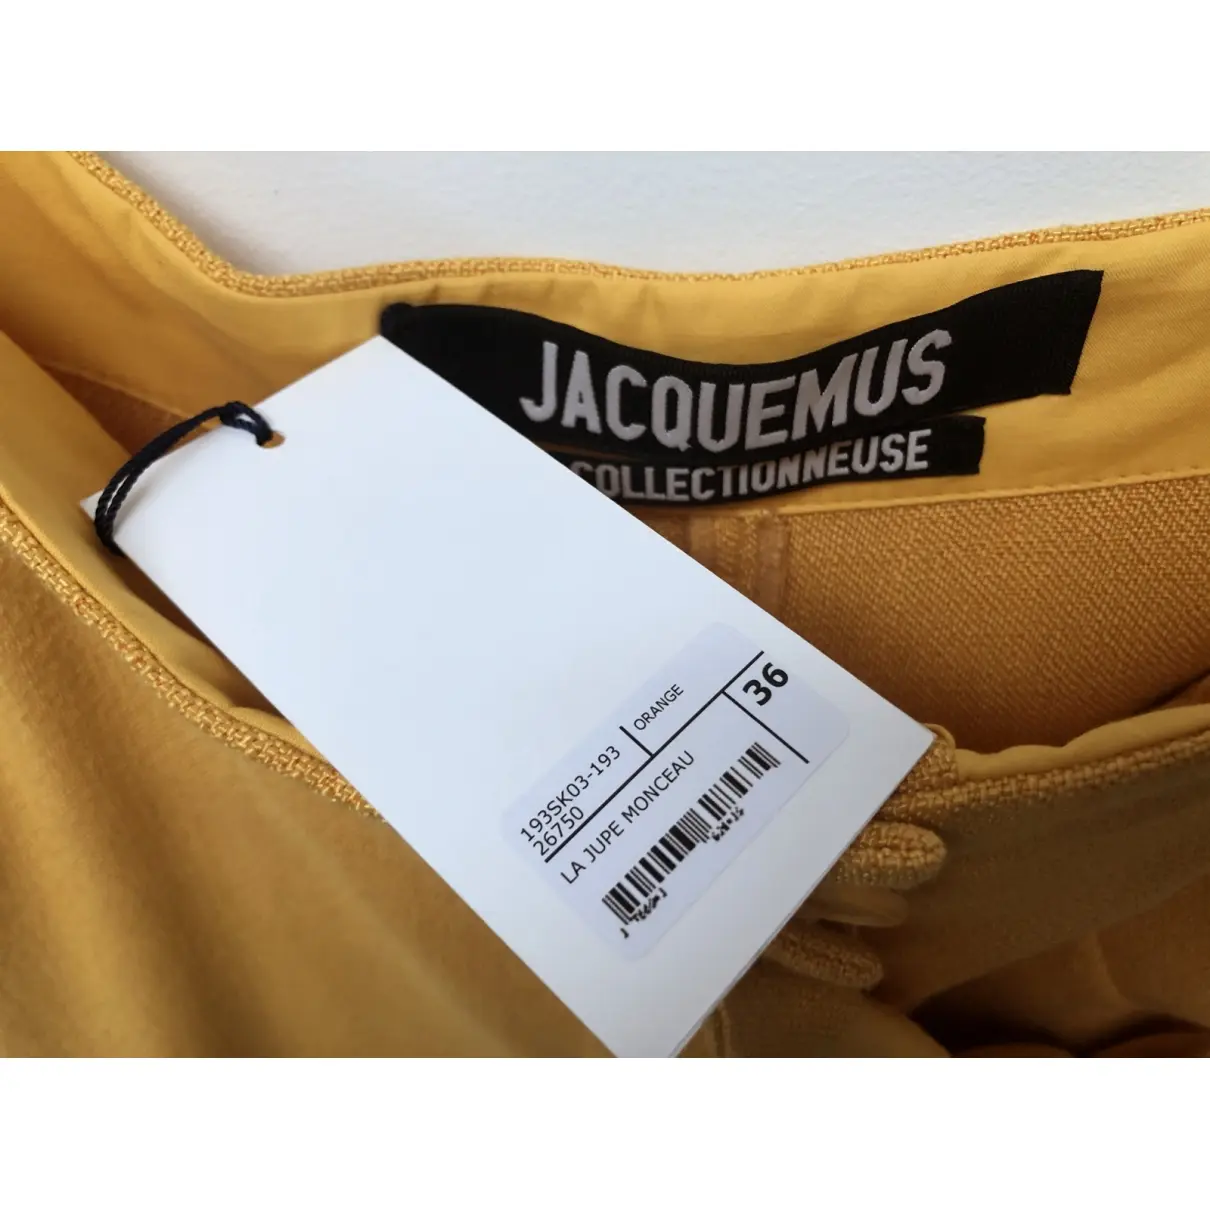 Jacquemus La Collectionneuse maxi skirt for sale